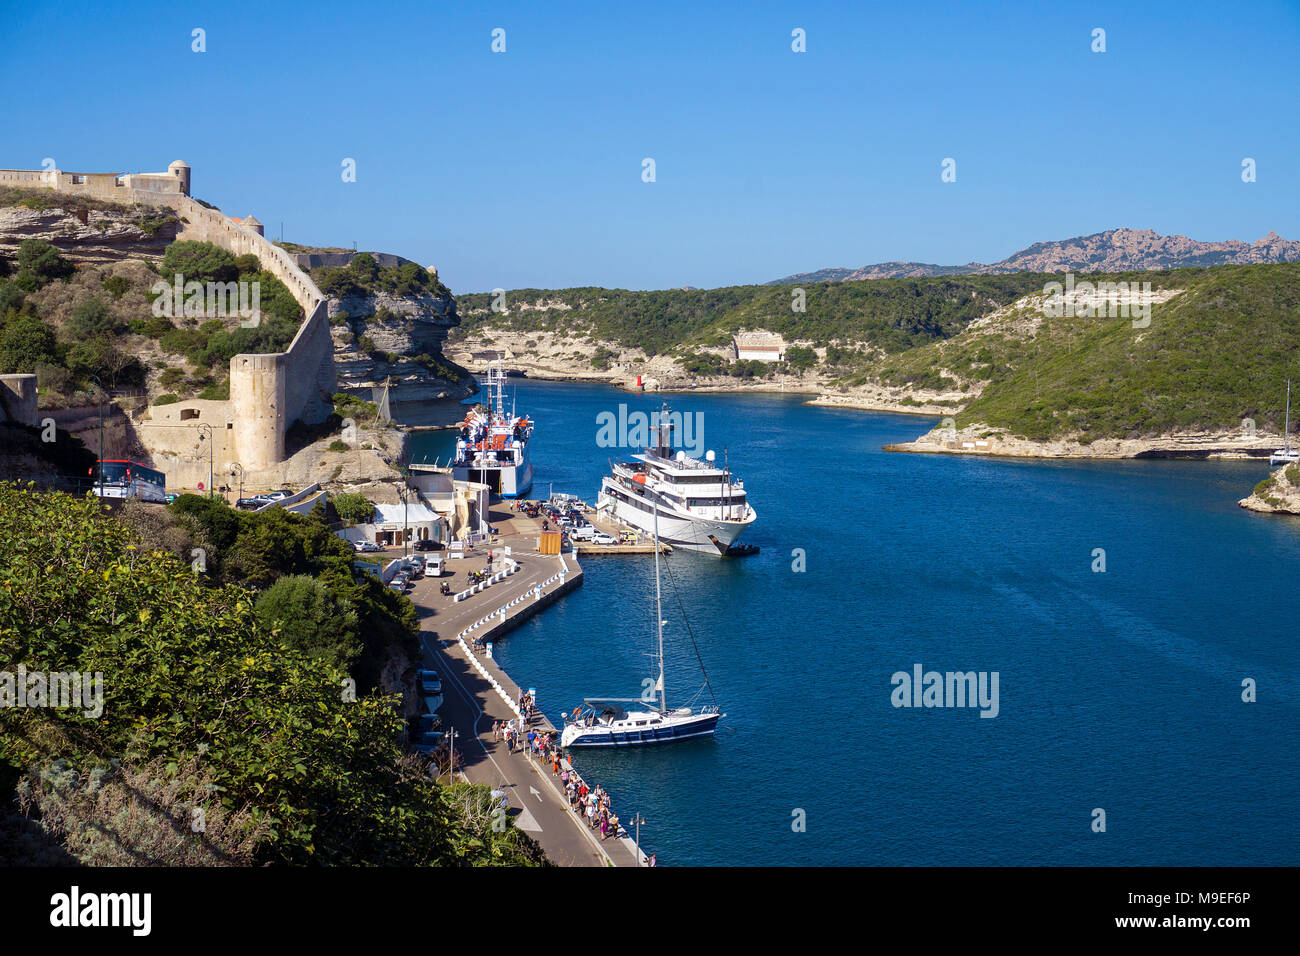 Port de plaisance et de pêche de Bonifacio, Corse, France, Europe, Méditerranée Banque D'Images